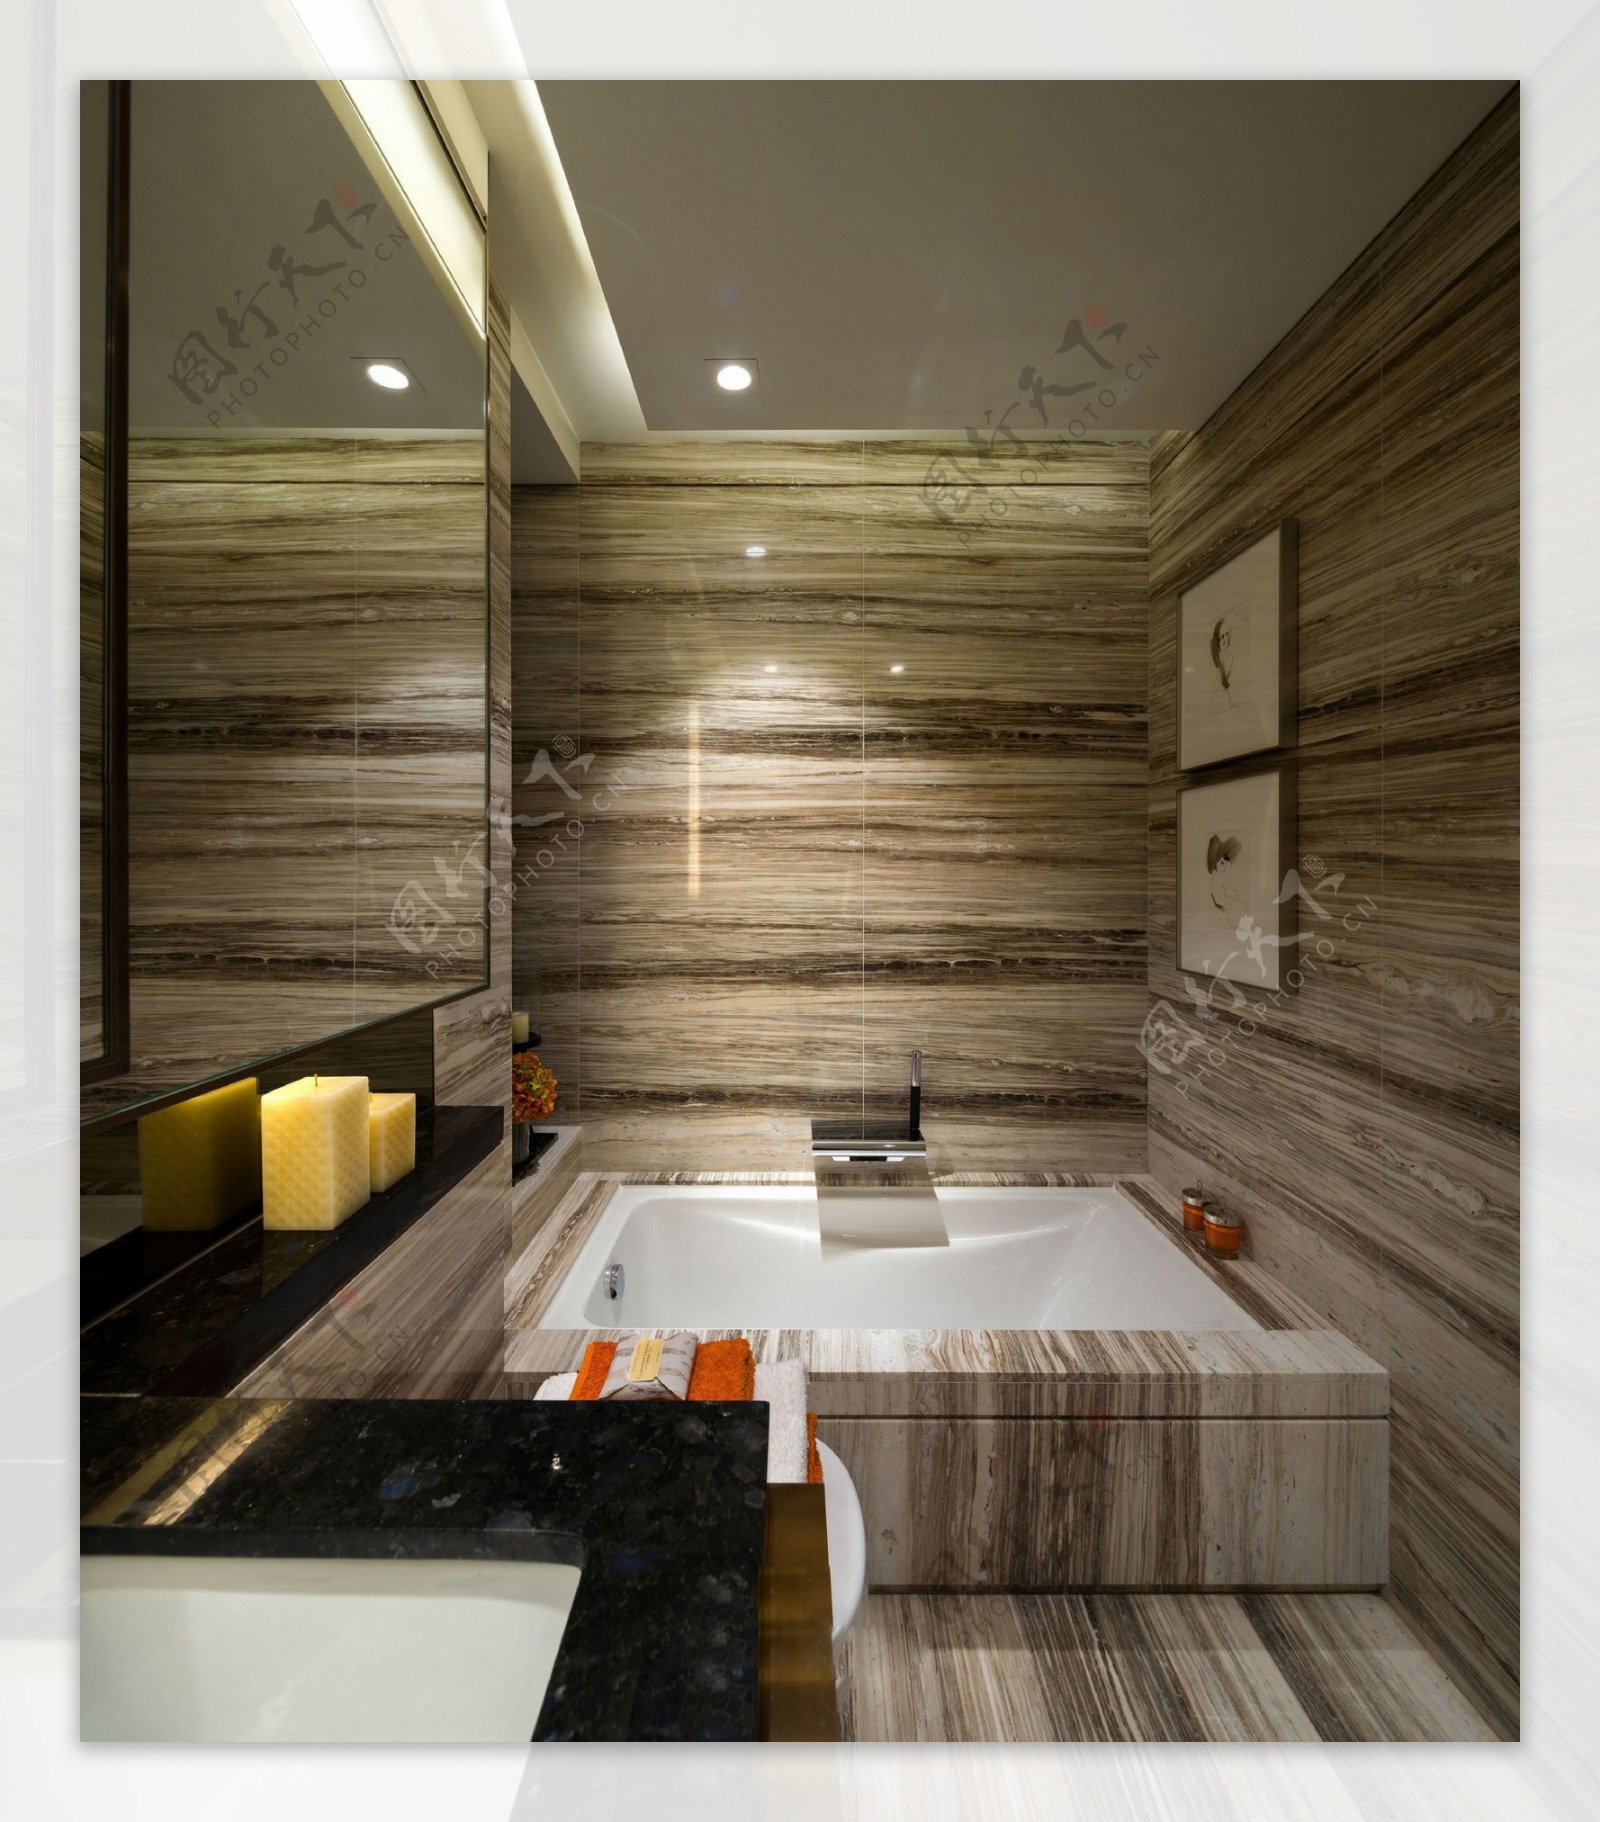 现代时尚卫生间浴缸背景墙设计图